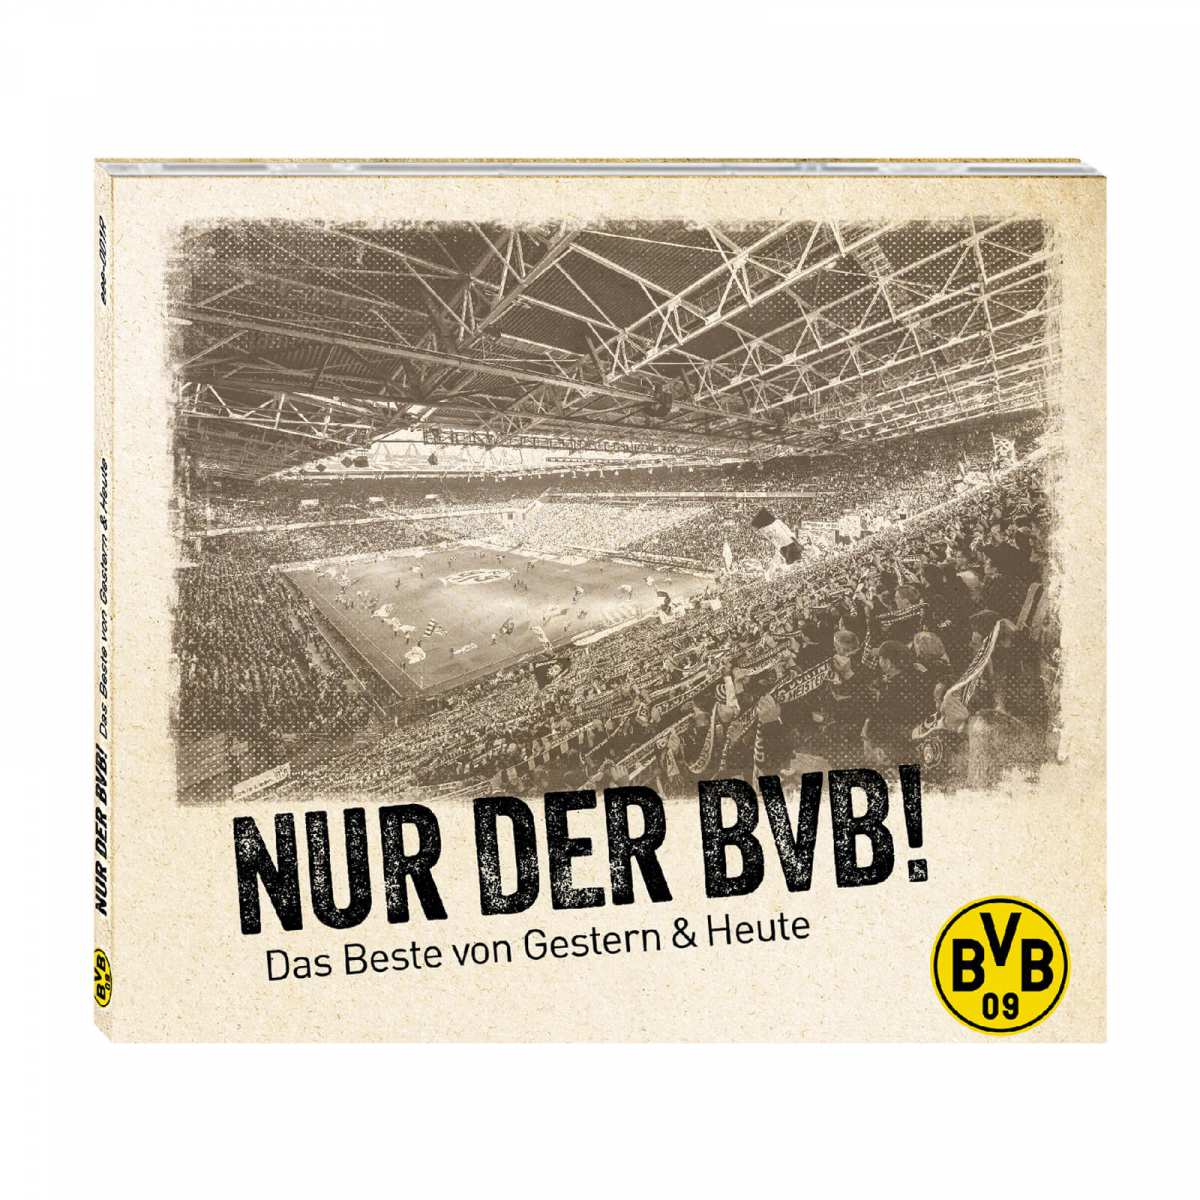 Borussia Dortmund BVB Fanschal "NUR DER BVB" BVB Schal BVB-Fanschal 